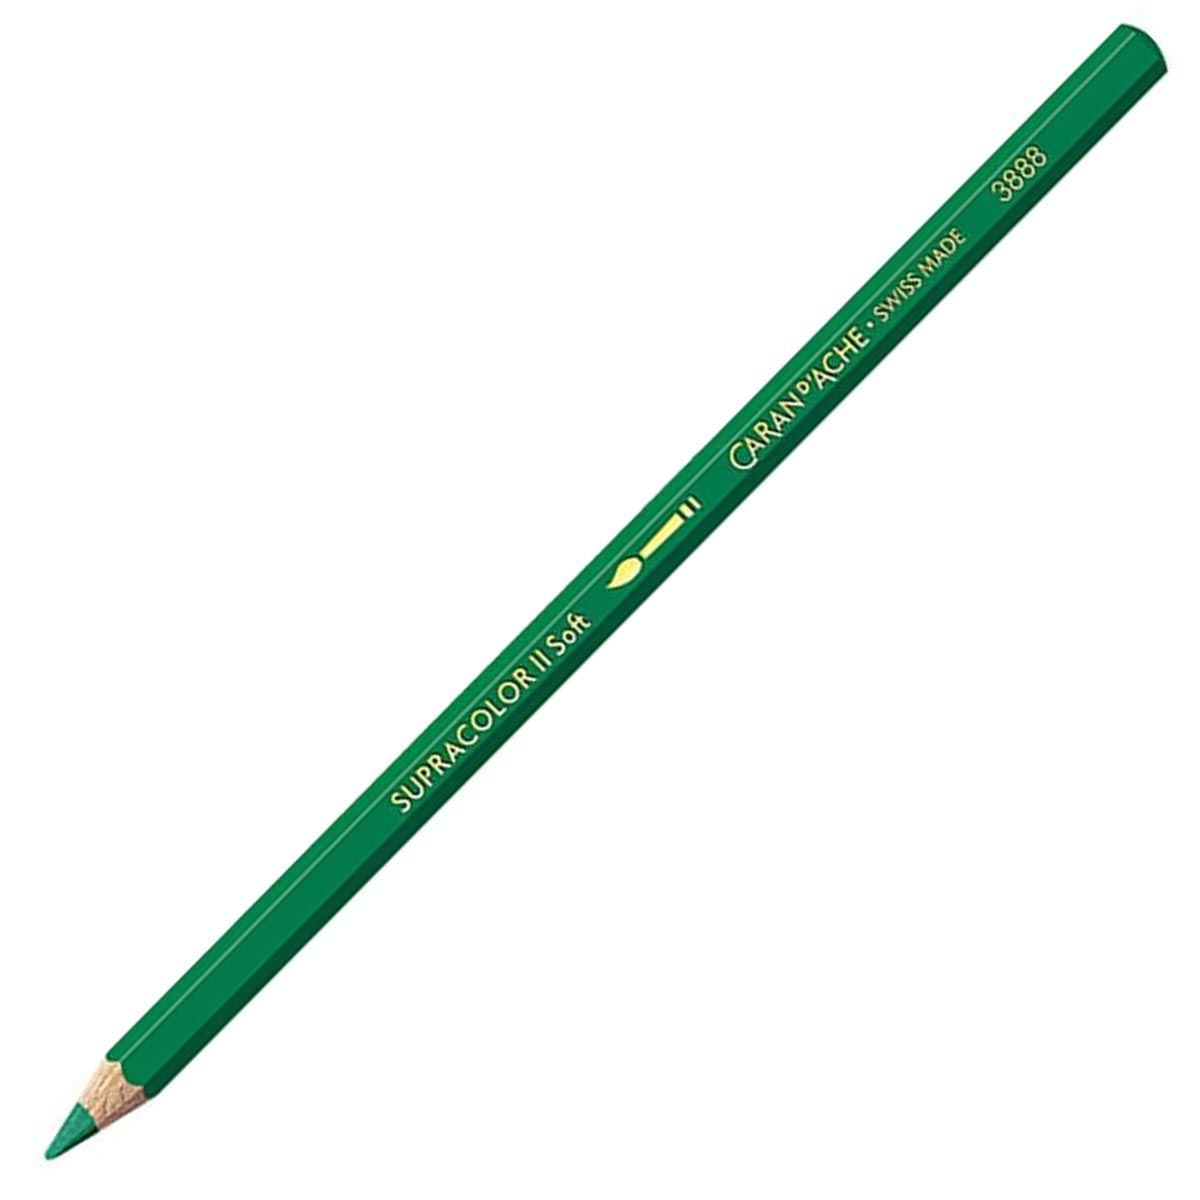 Caran d'Ache Supracolor ll Soft Aquarelle Pencil - Emerald Green 210